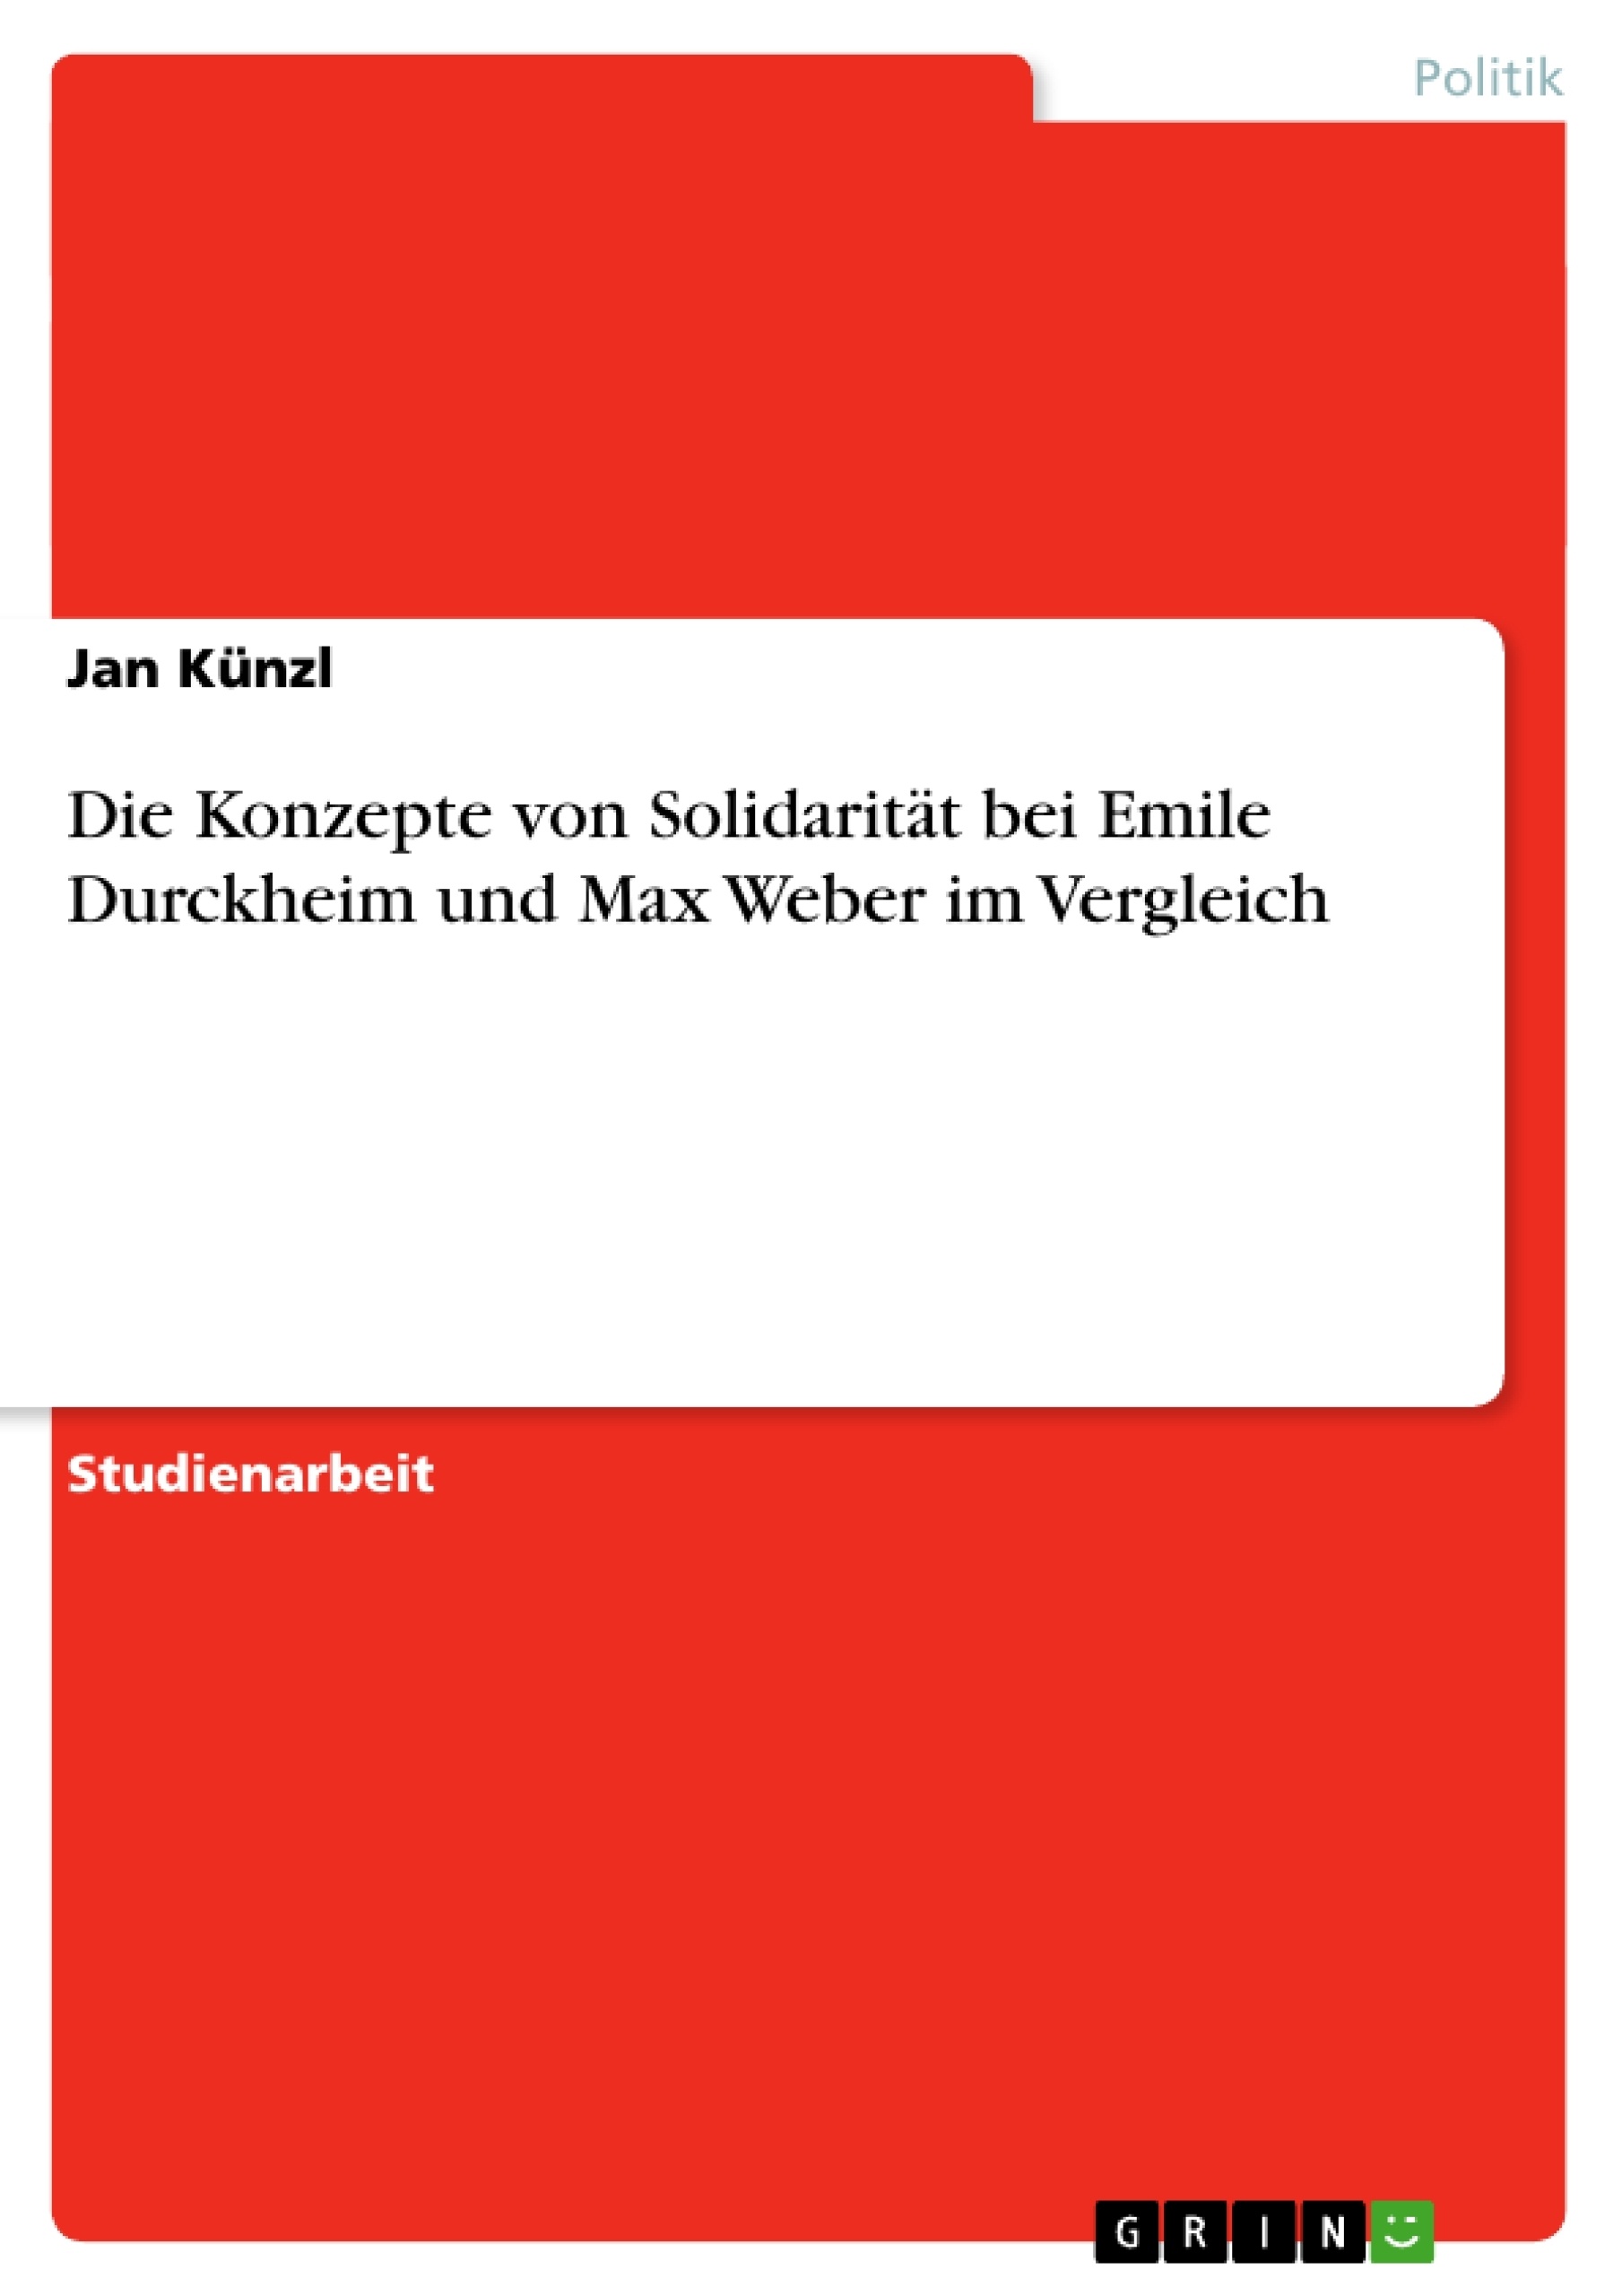 Título: Die Konzepte von Solidarität bei Emile Durckheim und Max Weber im Vergleich